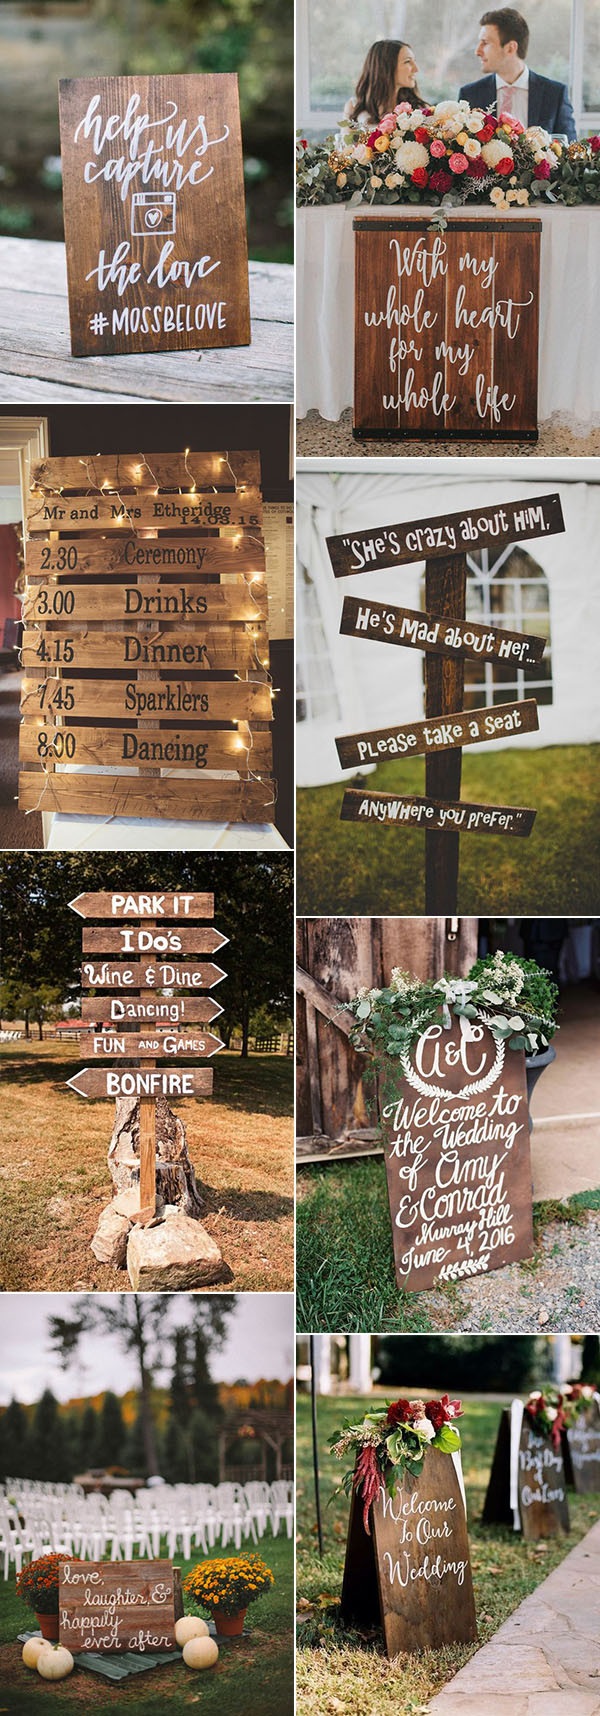 DIY Signs For Wedding
 Pretty Bud Friendly Wedding decorating Ideas 30 Easy to